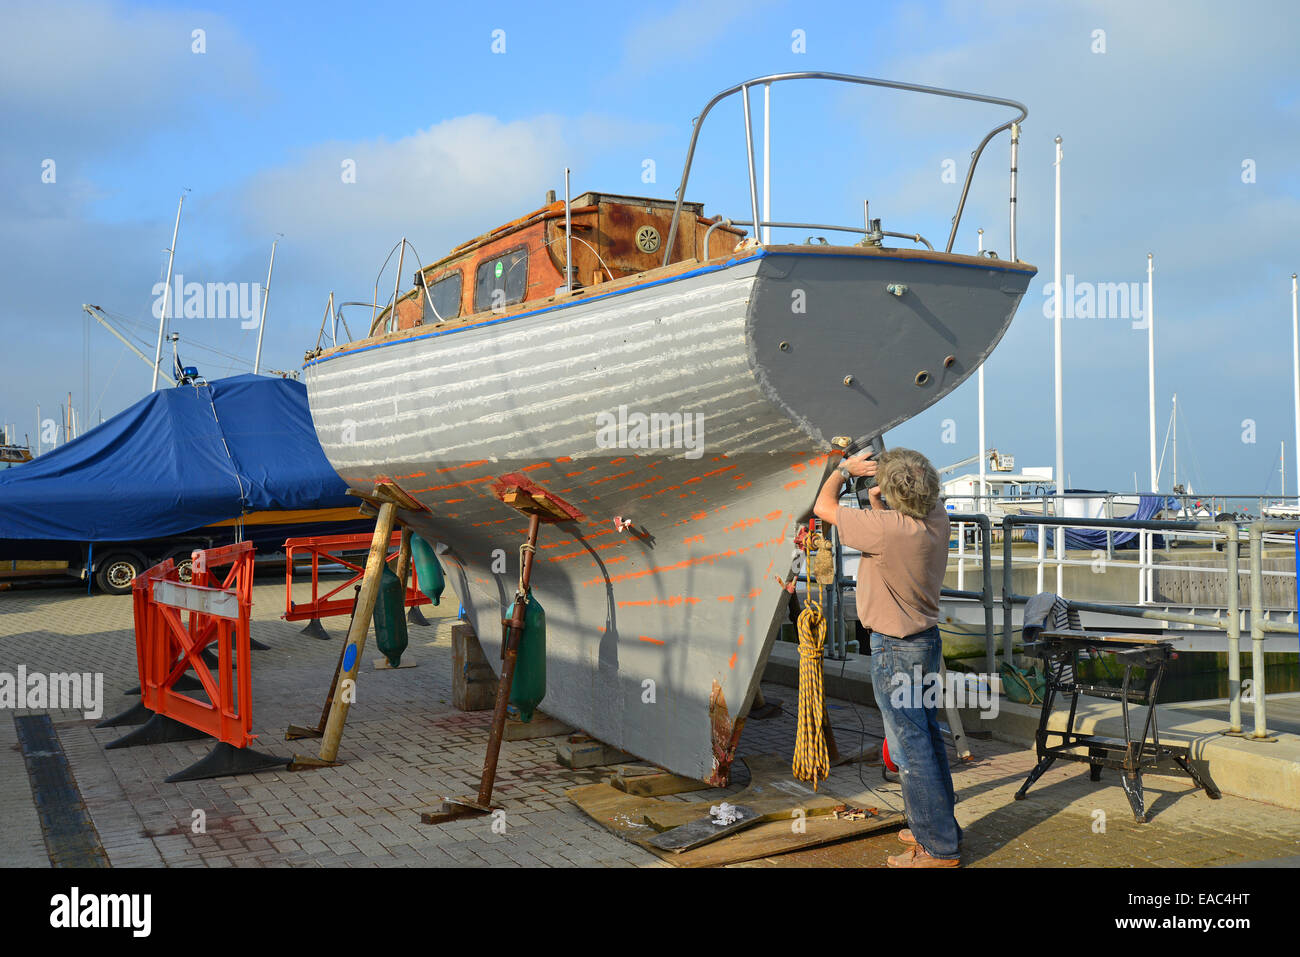 Fixation à l'homme de quille en bois ancien yacht, port de Cowes, Cowes, île de Wight, Angleterre, Royaume-Uni Banque D'Images